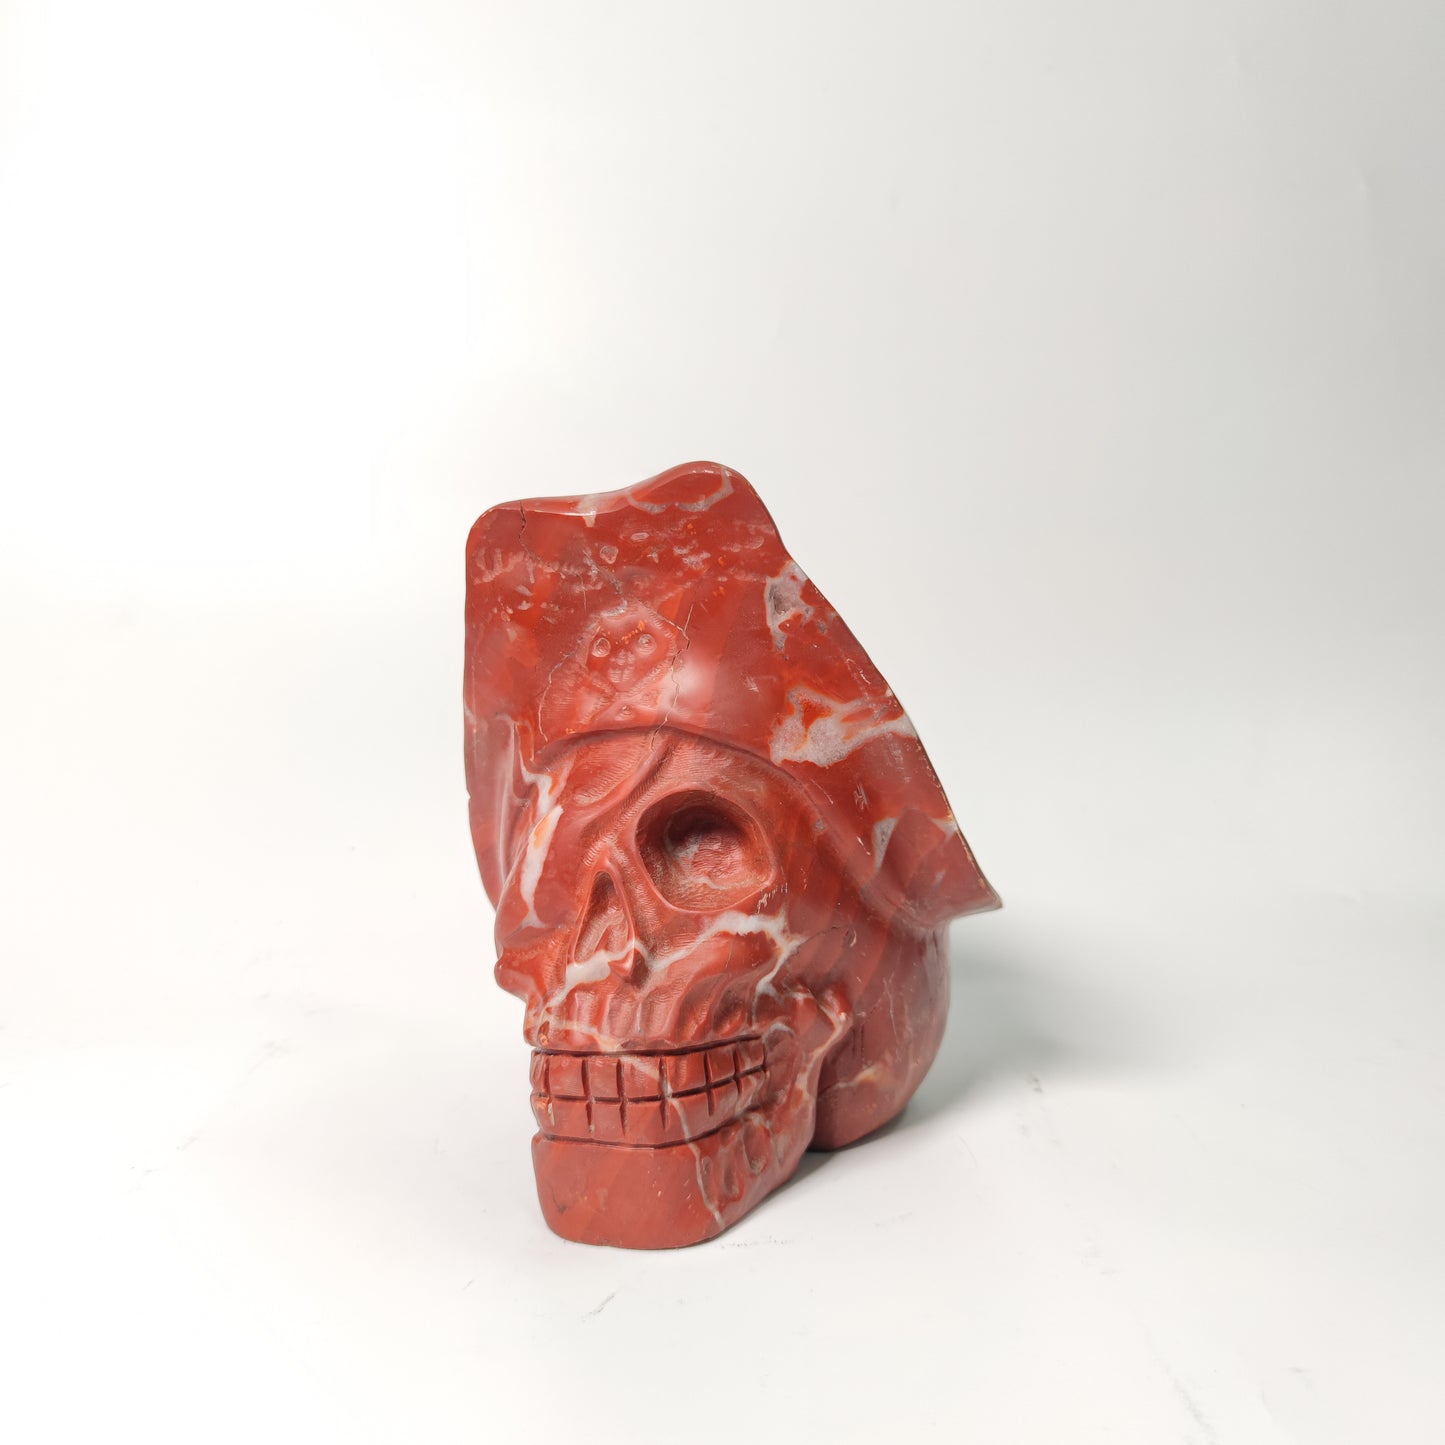 Red calcite skull